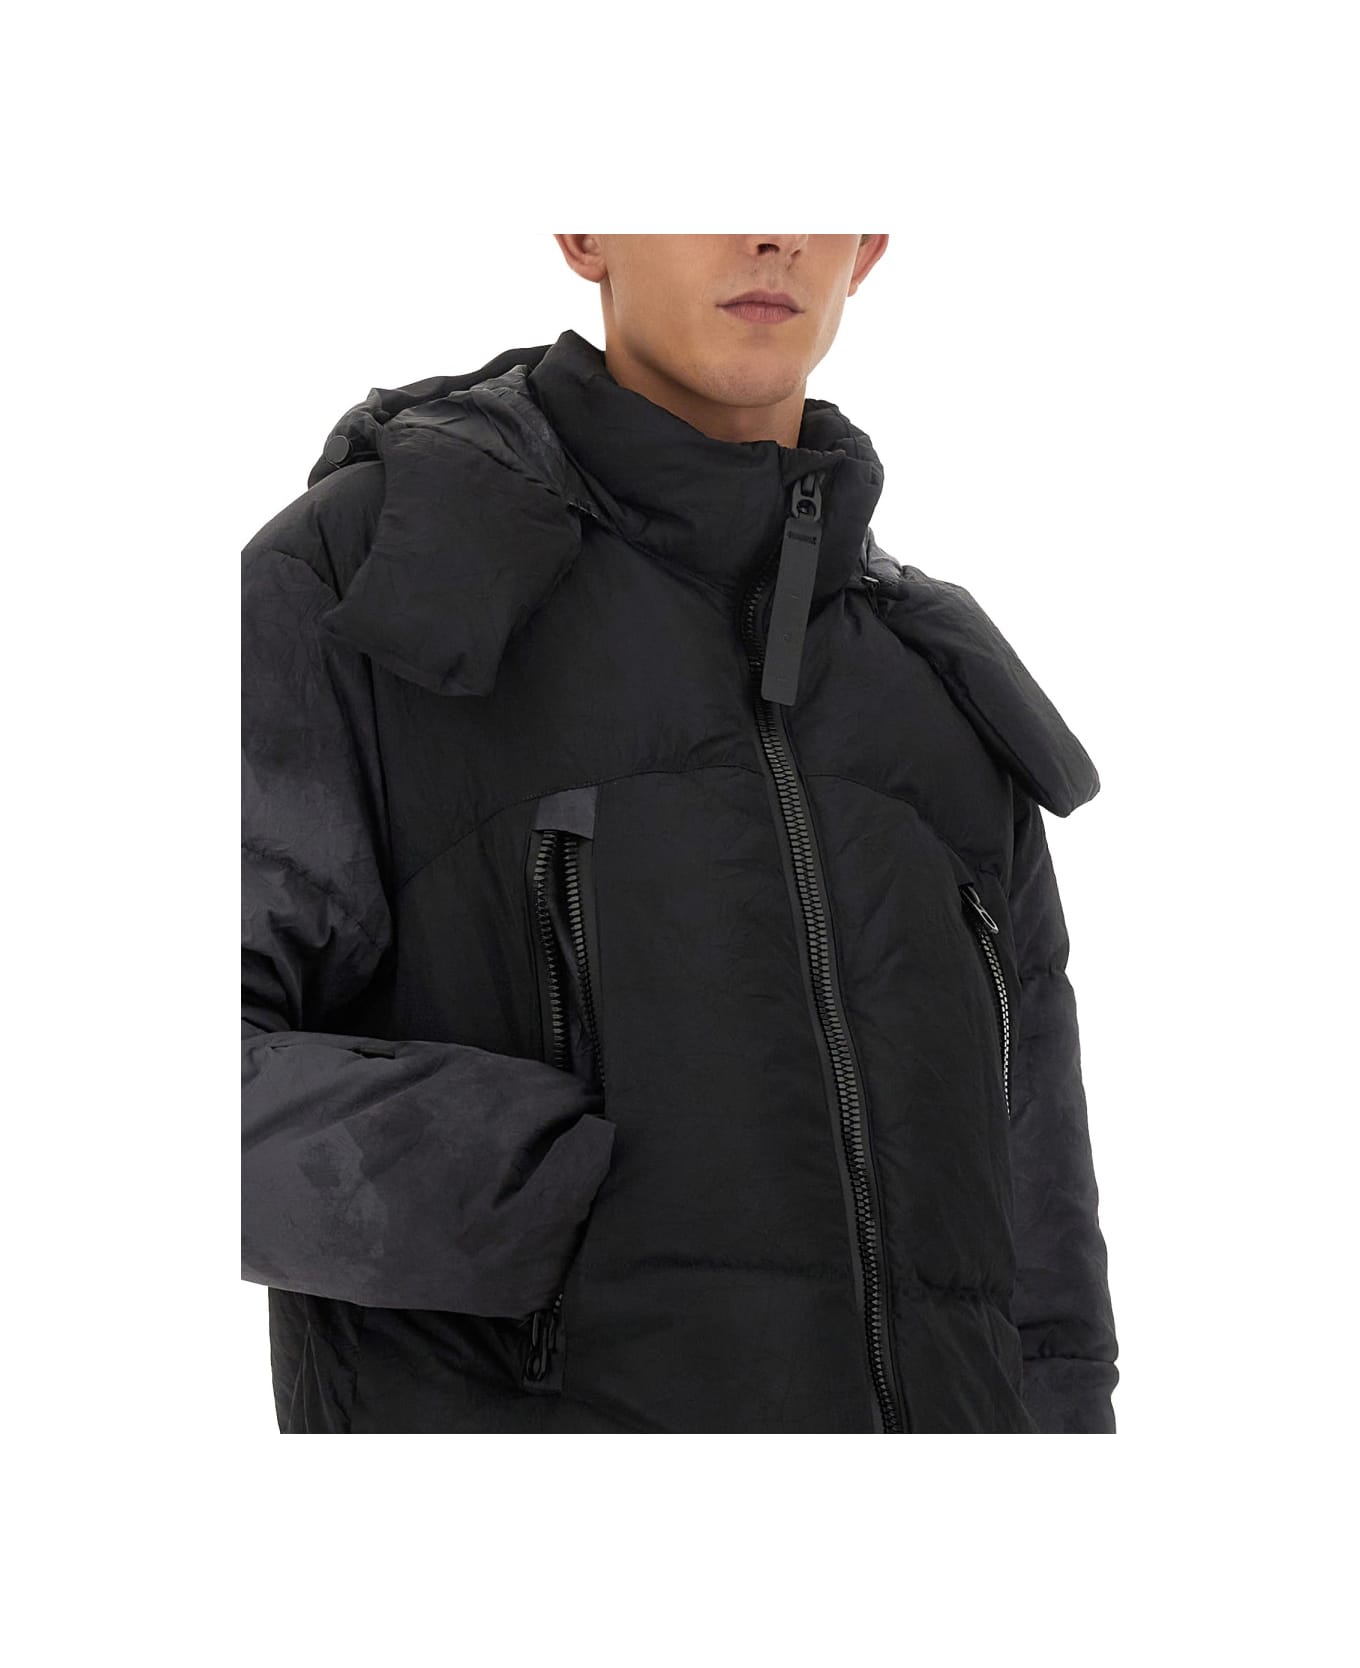 JG1 Jacket With Zip - BLACK ダウンジャケット